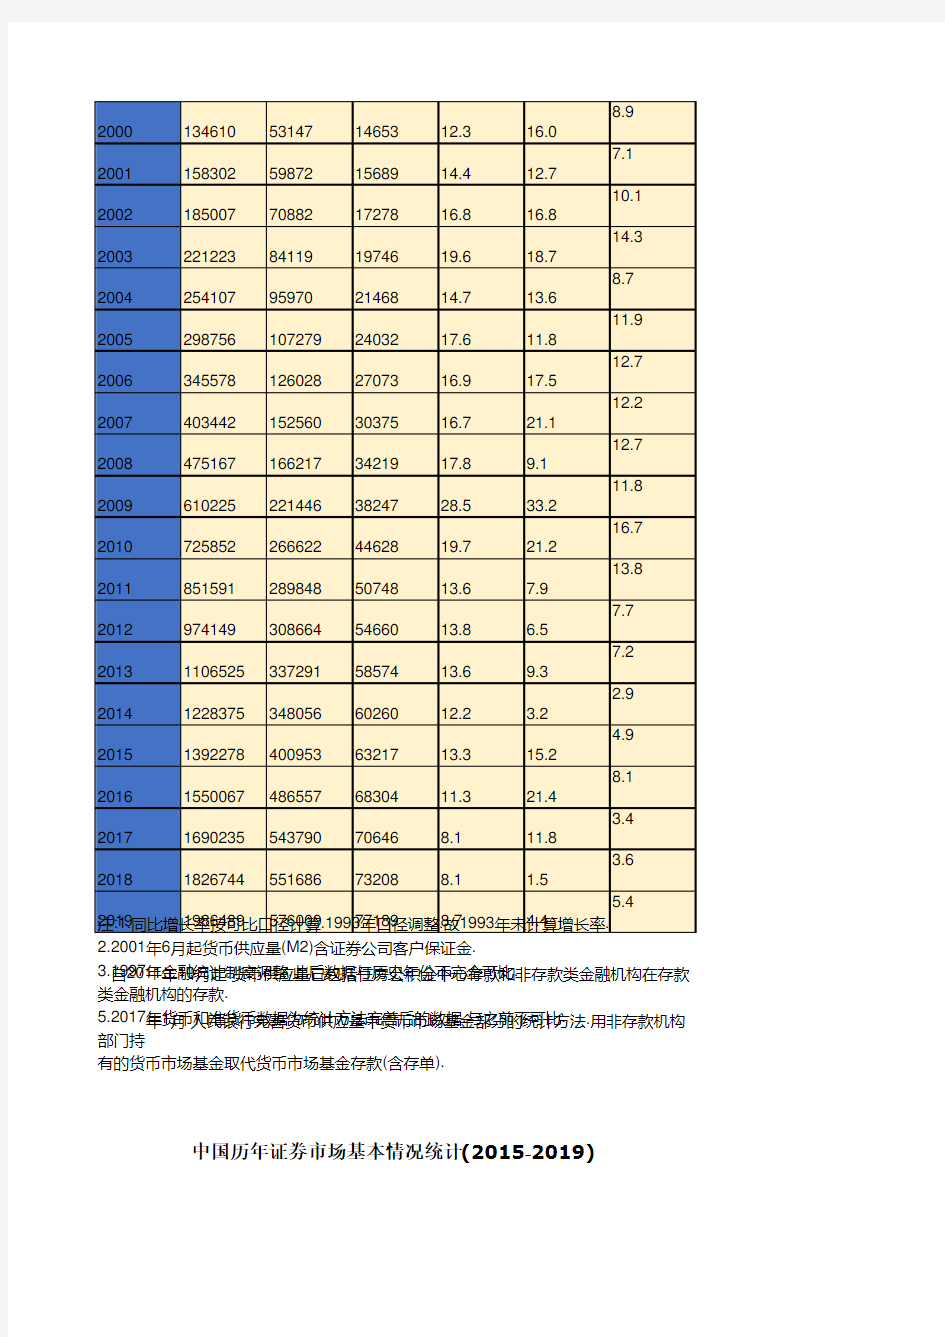 中国历年货币供应量统计(1978-2019) 中国历年证券市场基本情况统计(2015-2019)